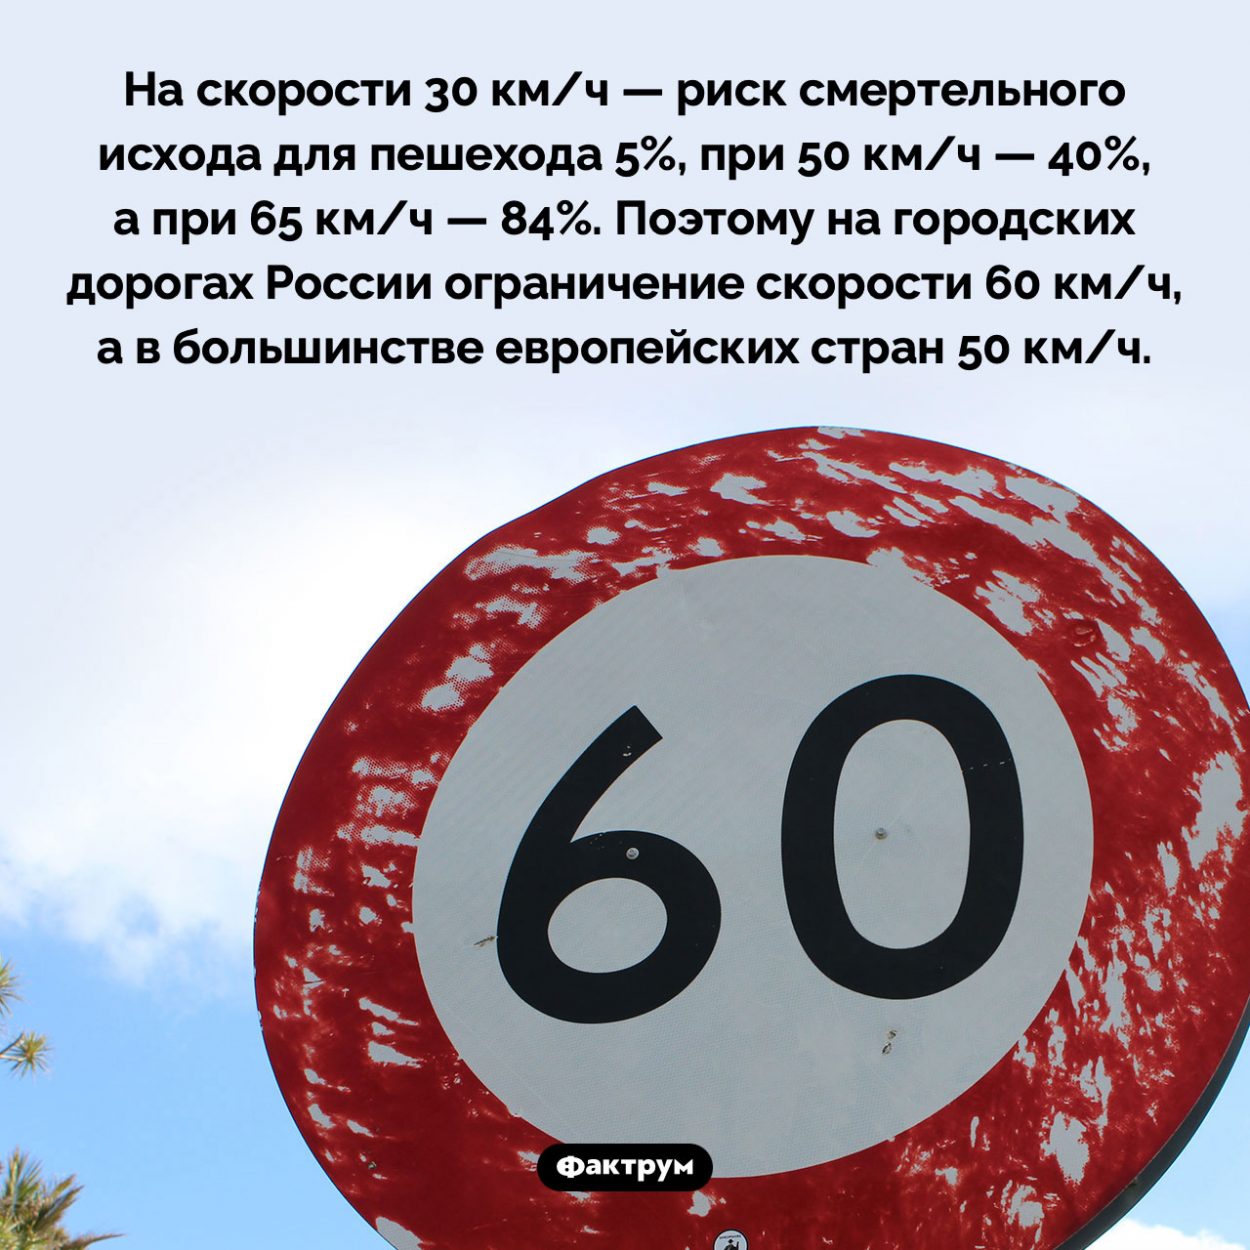 Ограничение скорости в городе. На скорости 30 км/ч — риск смертельного исхода для пешехода 5%, при 50 км/ч — 40%, а при 65 км/ч — 84%. Поэтому на городских дорогах России ограничение скорости 60 км/ч, а в большинстве европейских стран 50 км/ч.